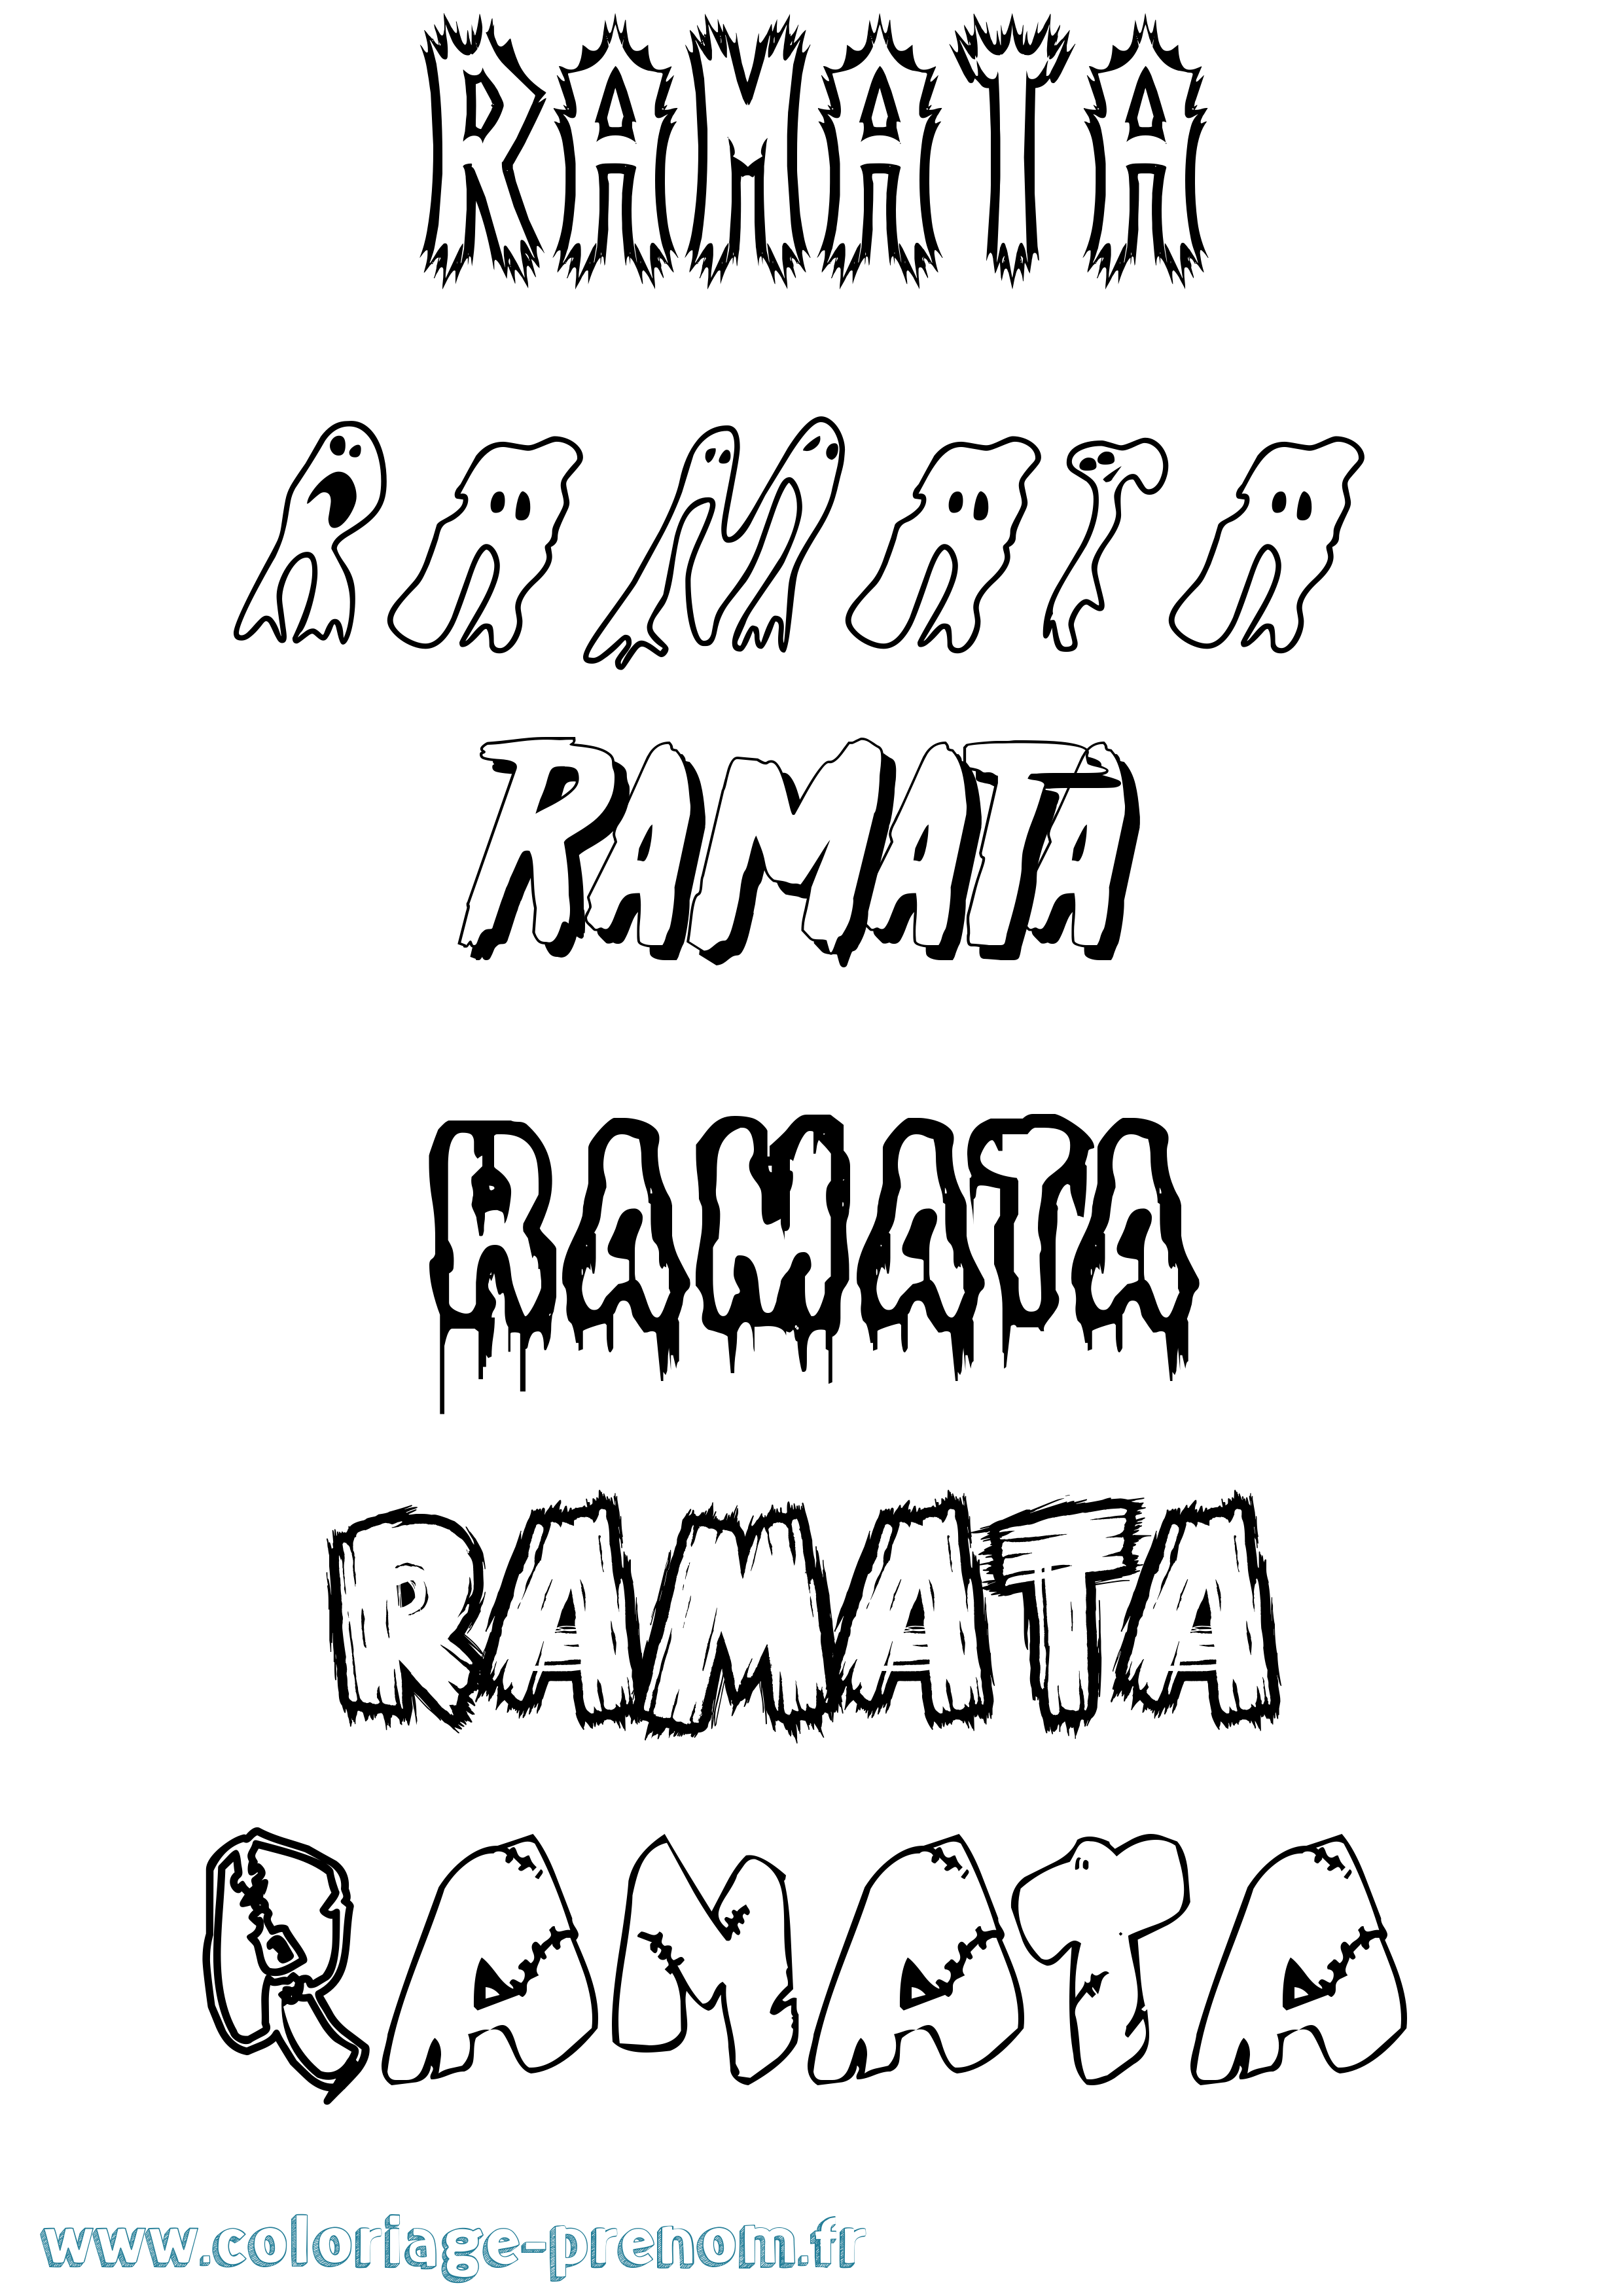 Coloriage prénom Ramata Frisson